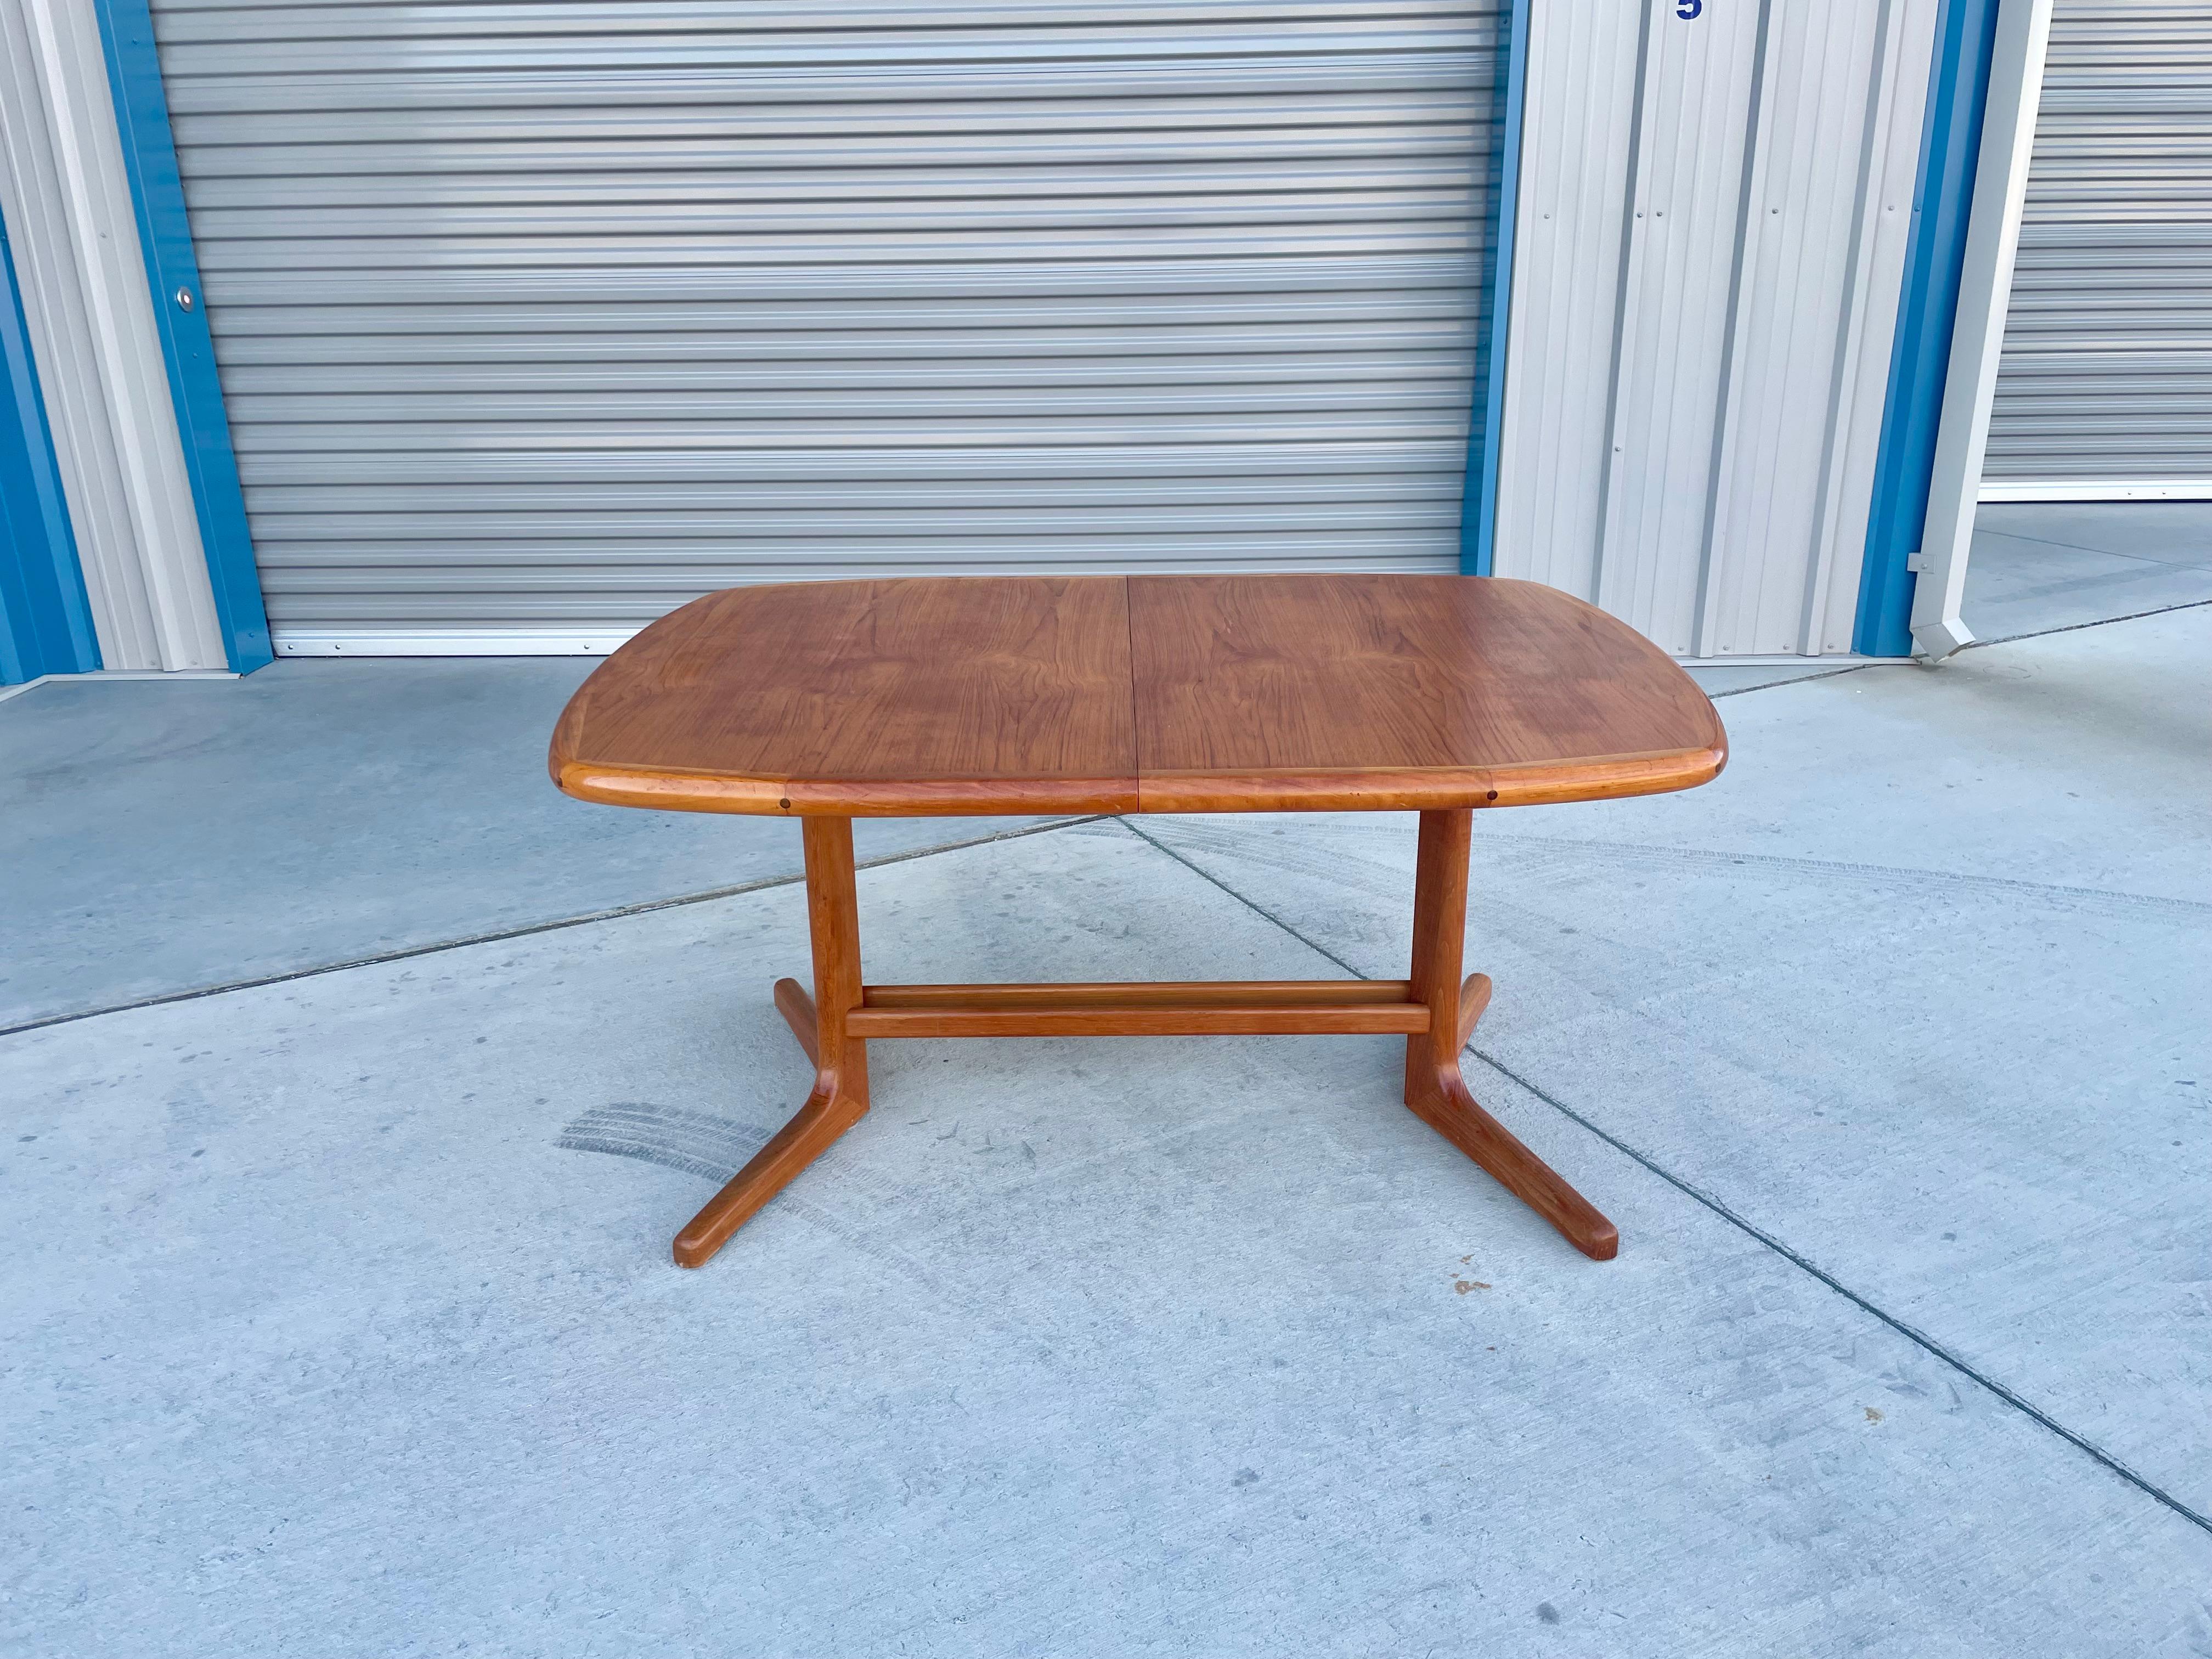 Moderner dänischer Esstisch aus Teakholz, entworfen und hergestellt in Dänemark, ca. 1960er Jahre. Dieser erstaunliche Esstisch hat eine ovale Platte, die auf einem Teakholzsockel ruht. Der Tisch wird mit zwei Platten geliefert, mit denen Sie den